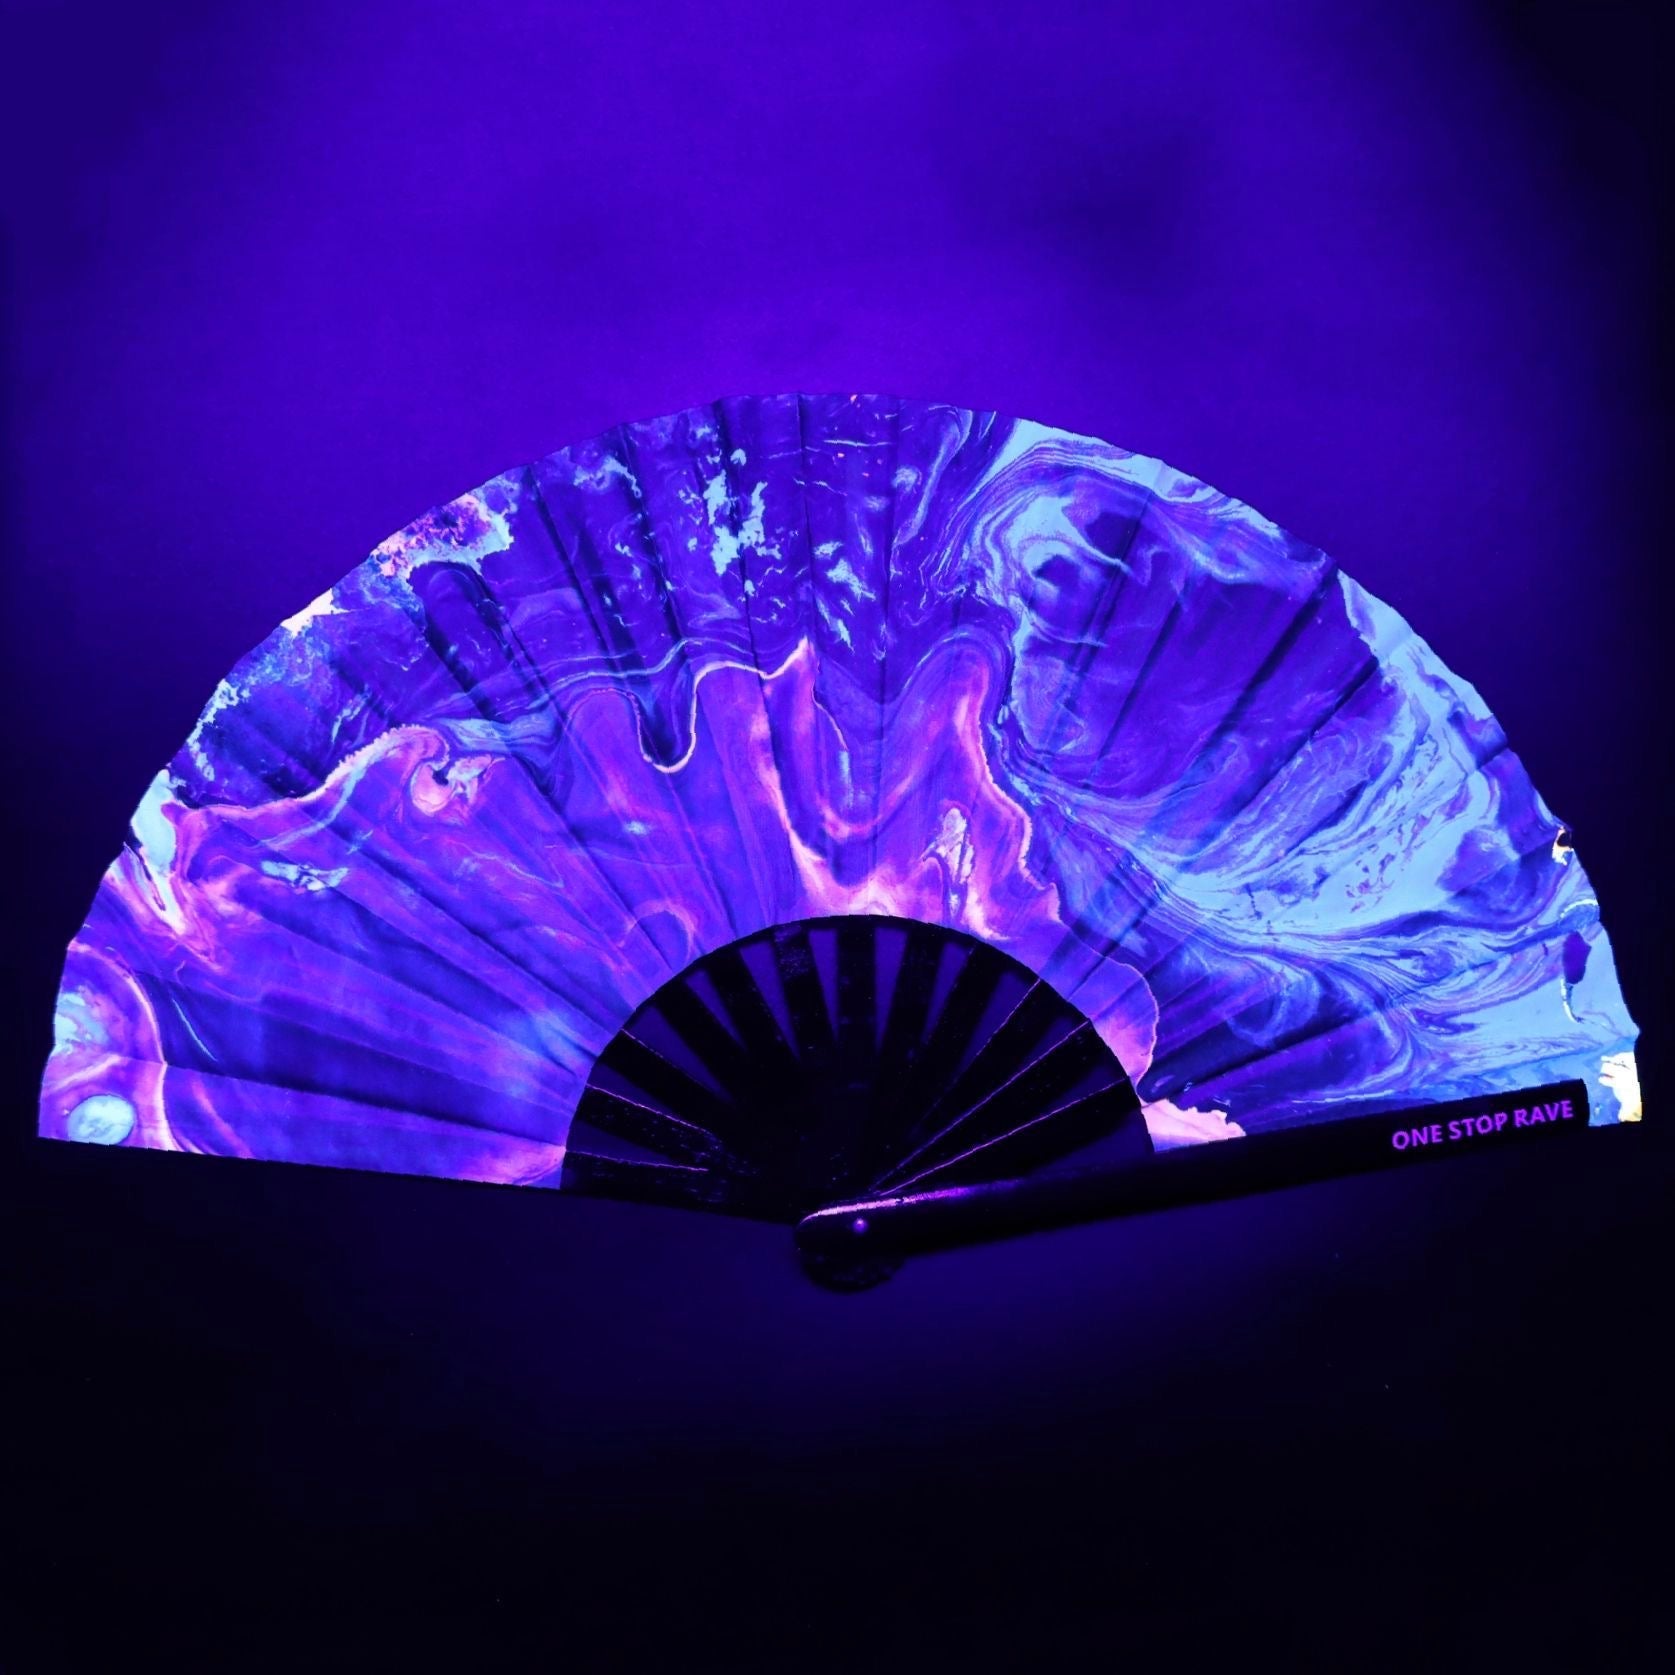 Lucy Hand Fan, Festival Fans 13.5", - One Stop Rave